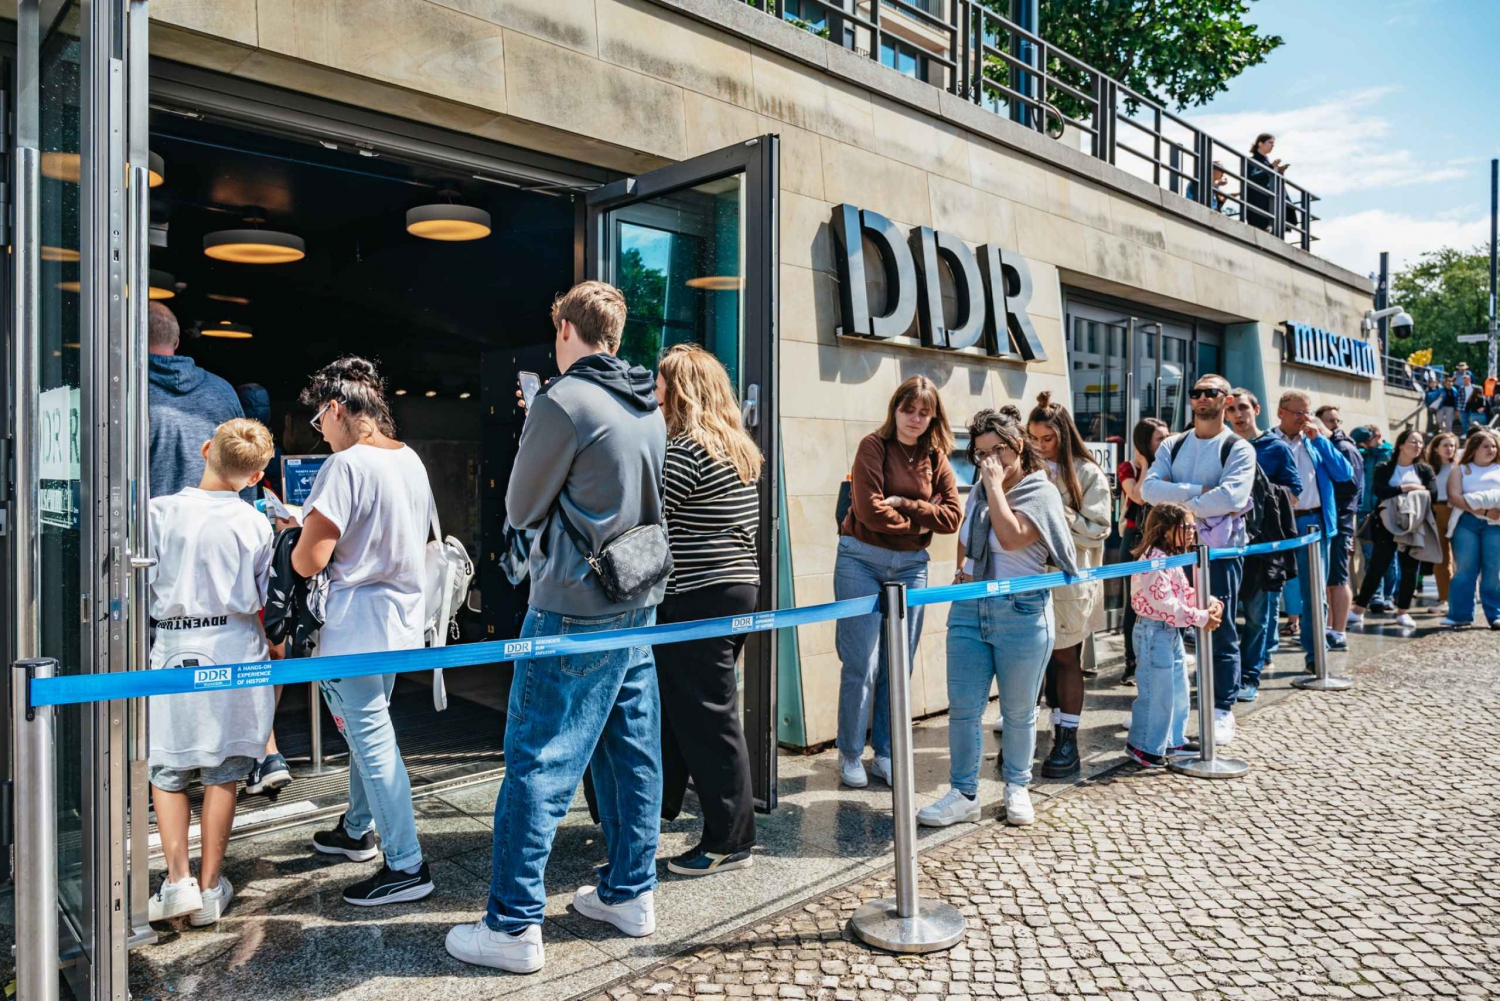 Berlin: DDR Museum Tickets